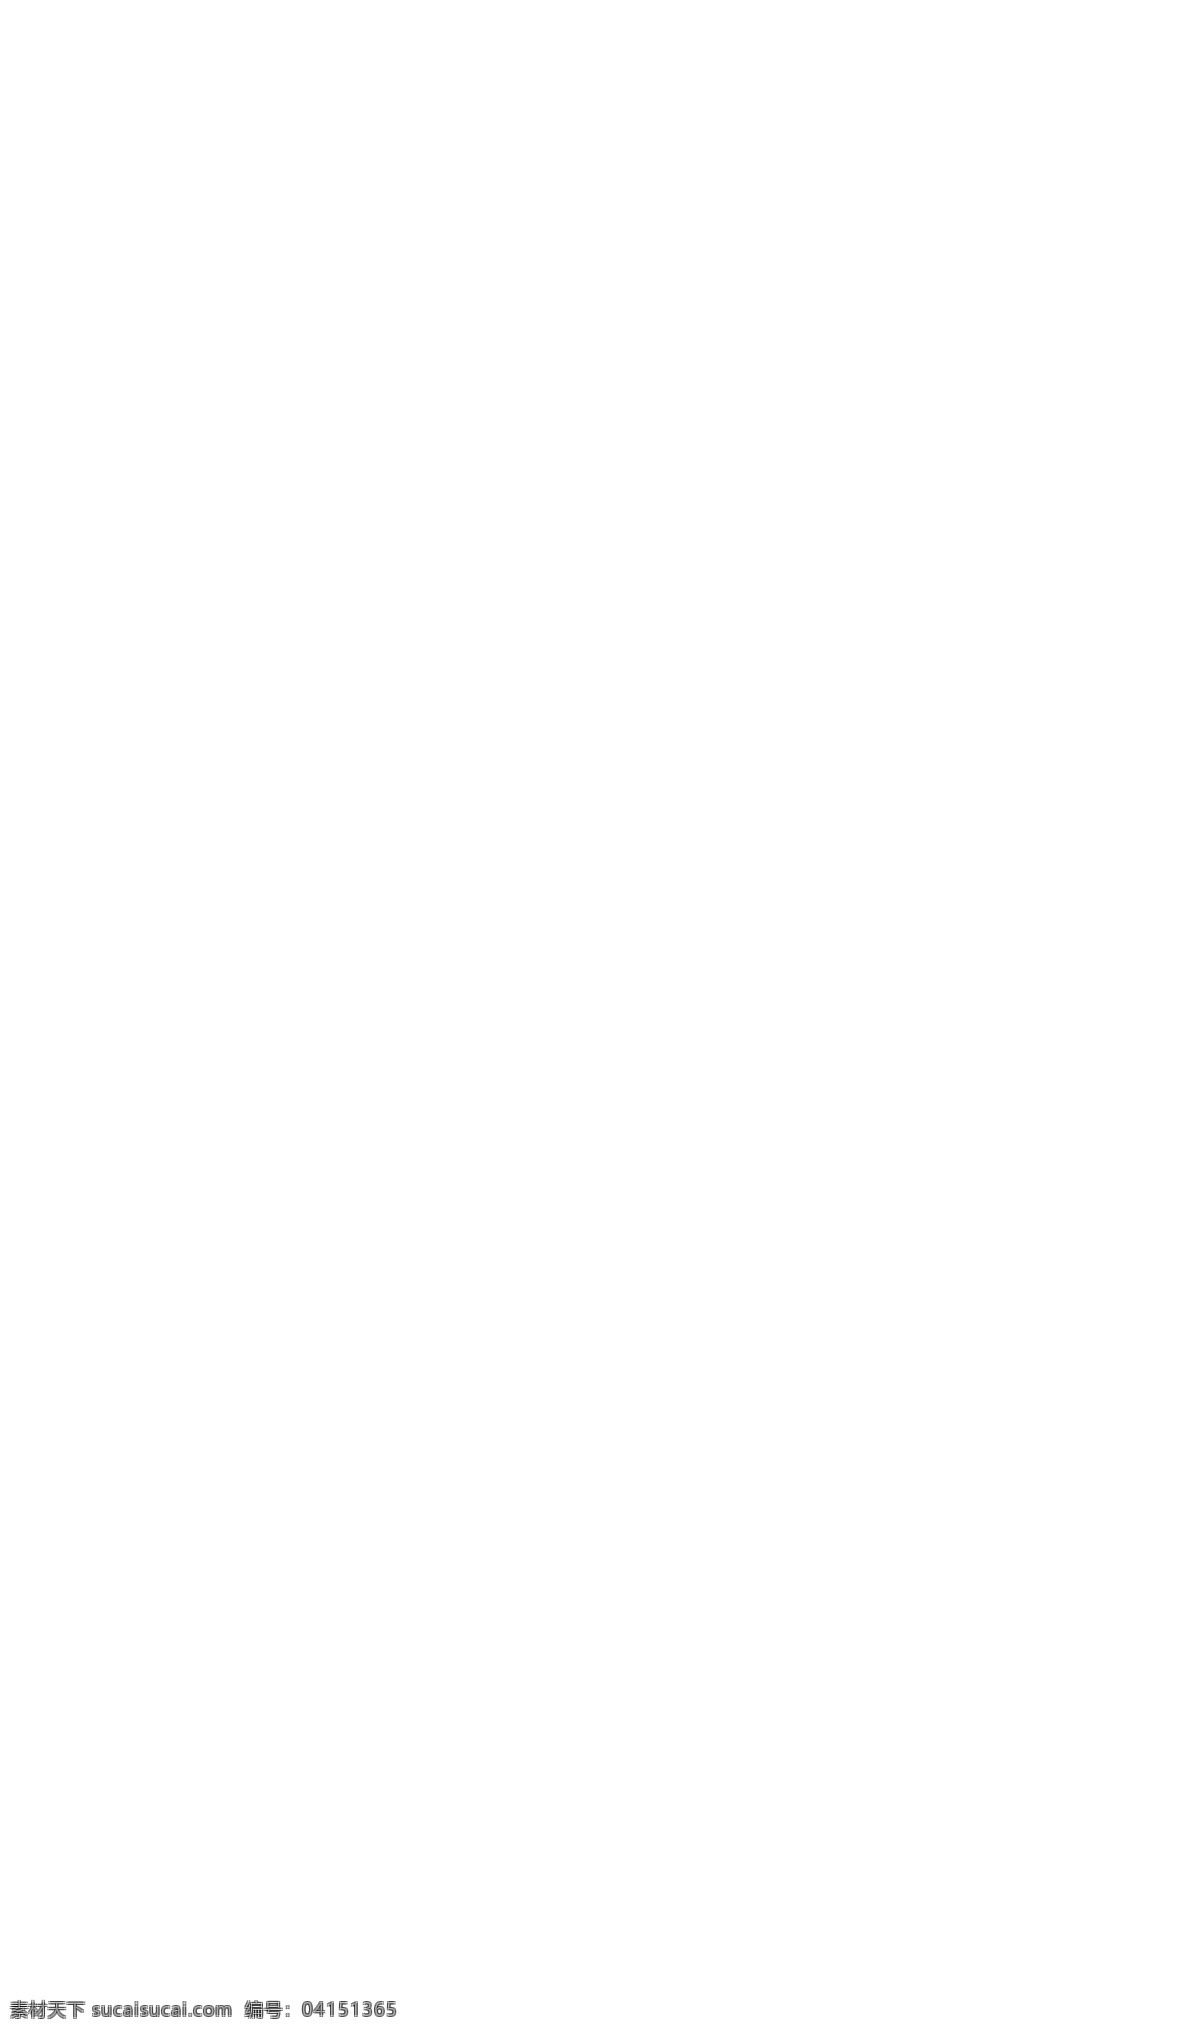 草绿色 网站 模板 爱心 韩国网站模板 黑板 美女 巧克力 四叶草 网站模板 小熊 雨伞 照片 塞子 照相机 网页素材 网页模板